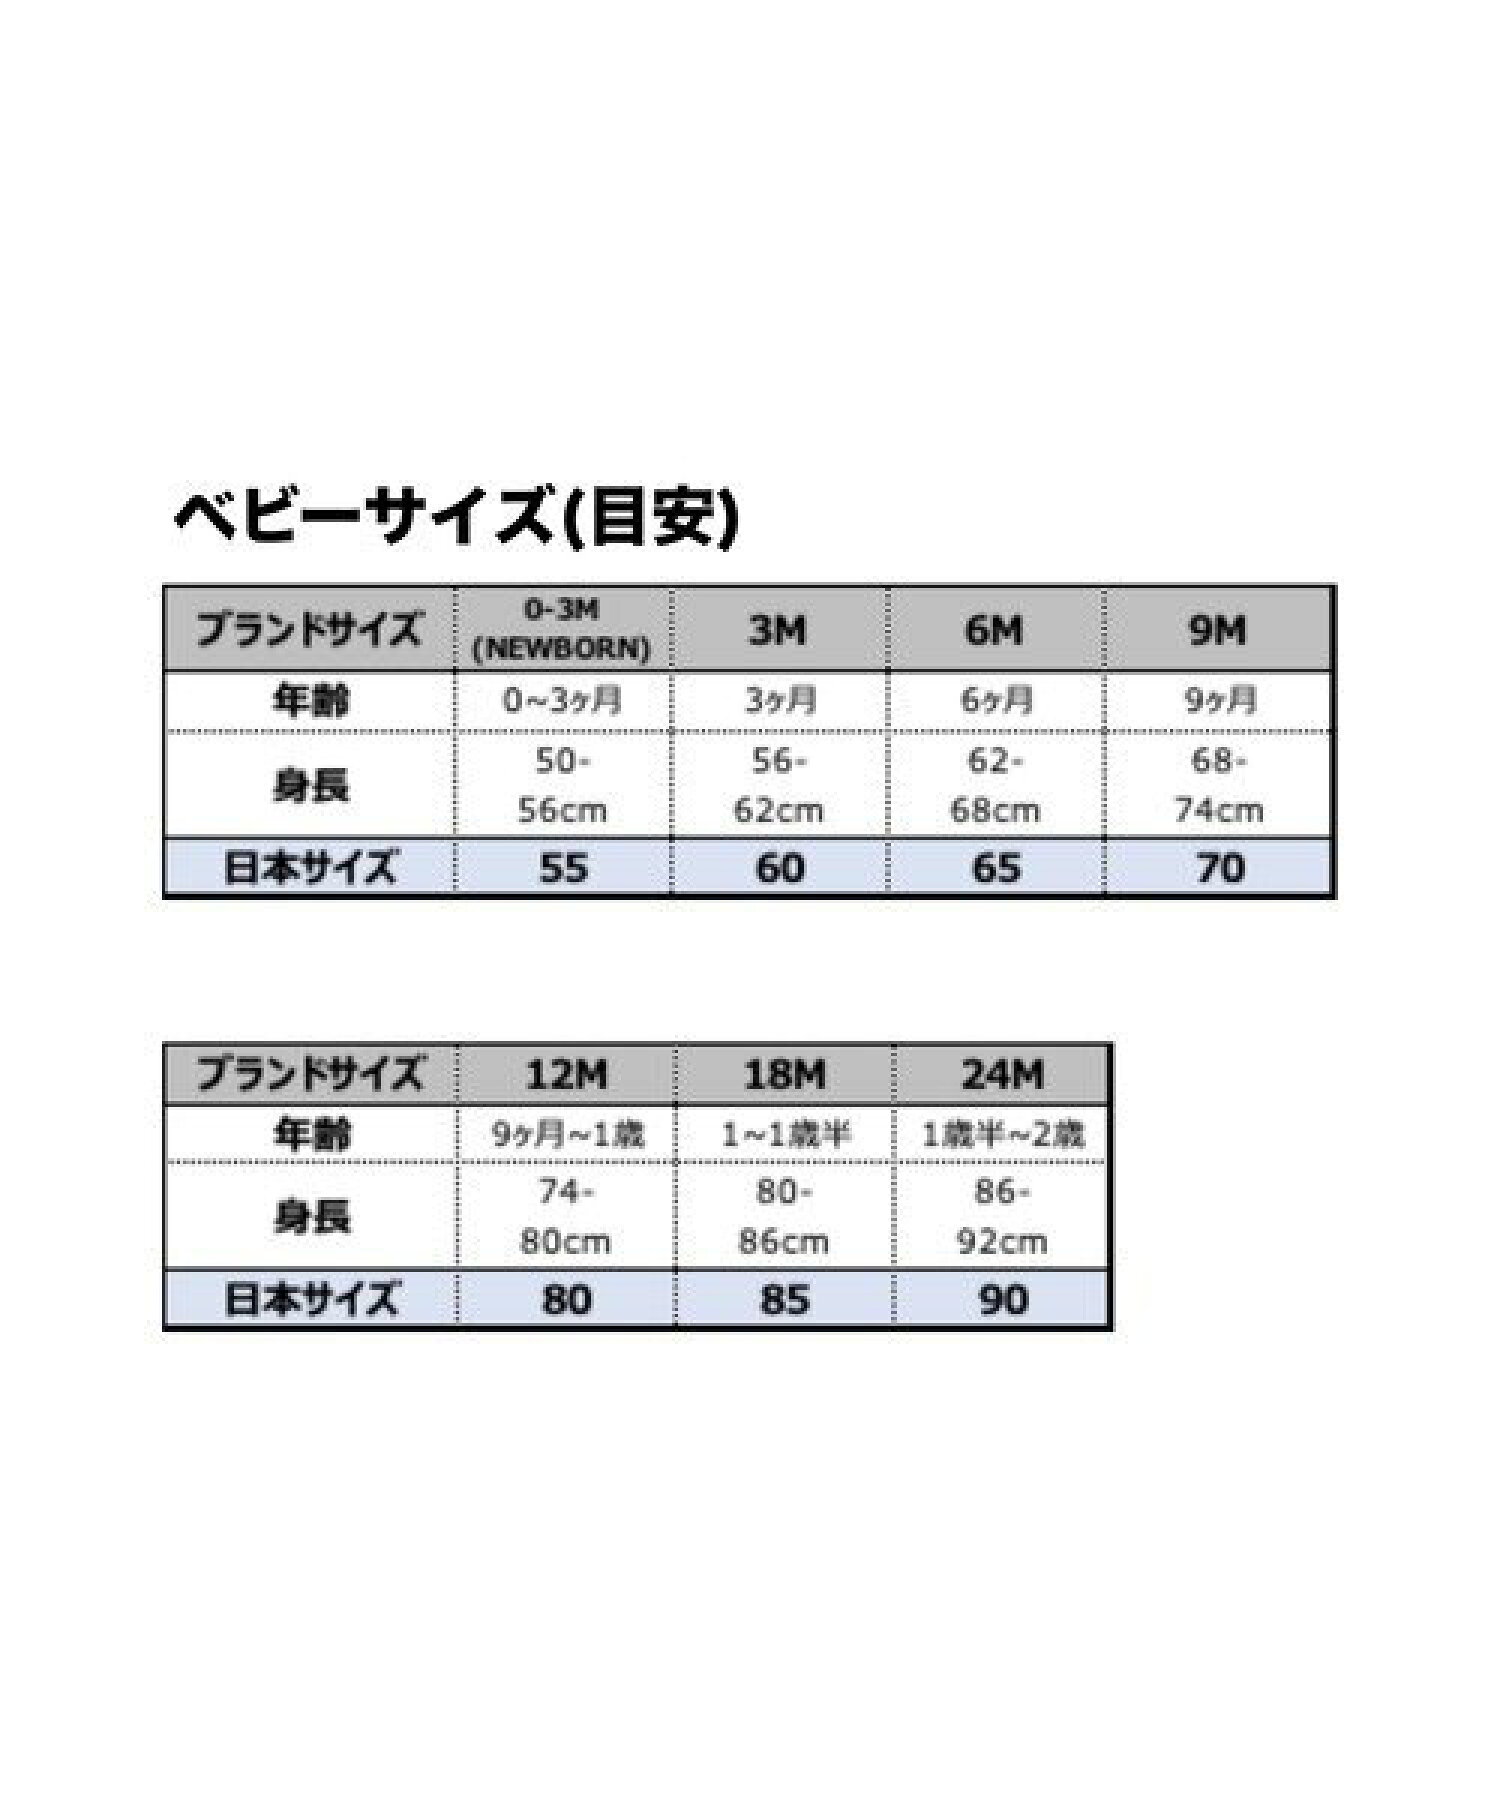 ベビー(6-12M) セット商品 NIKE(ナイキ) NHN FUTURA LOGO BOX SET